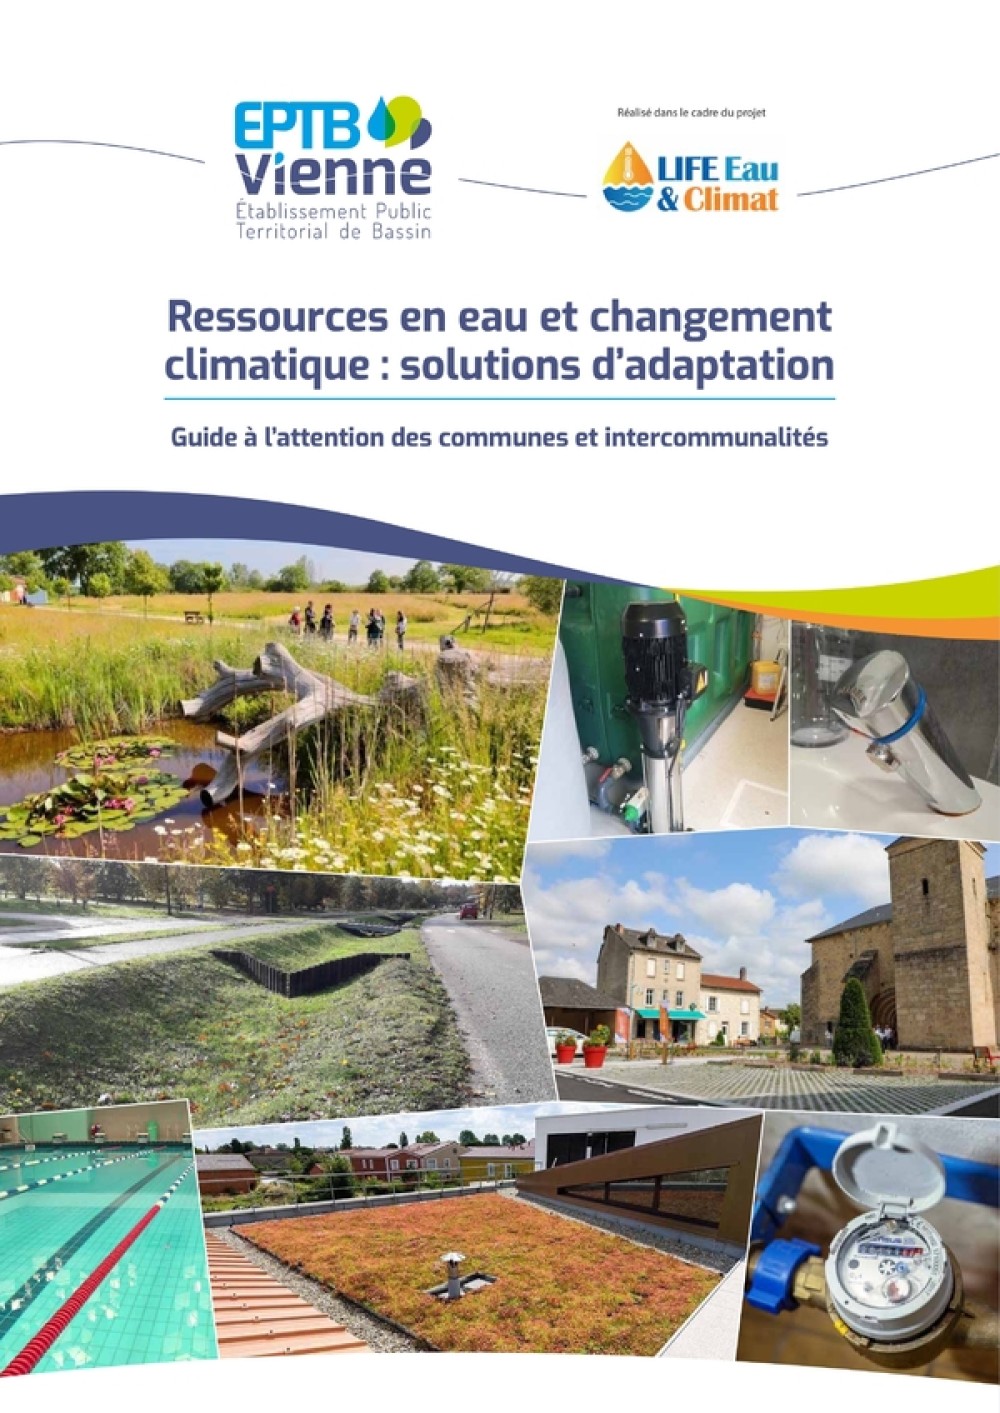 [Publication] Le guide de l’EPTB Vienne sur l’adaptation au changement climatique est disponible !